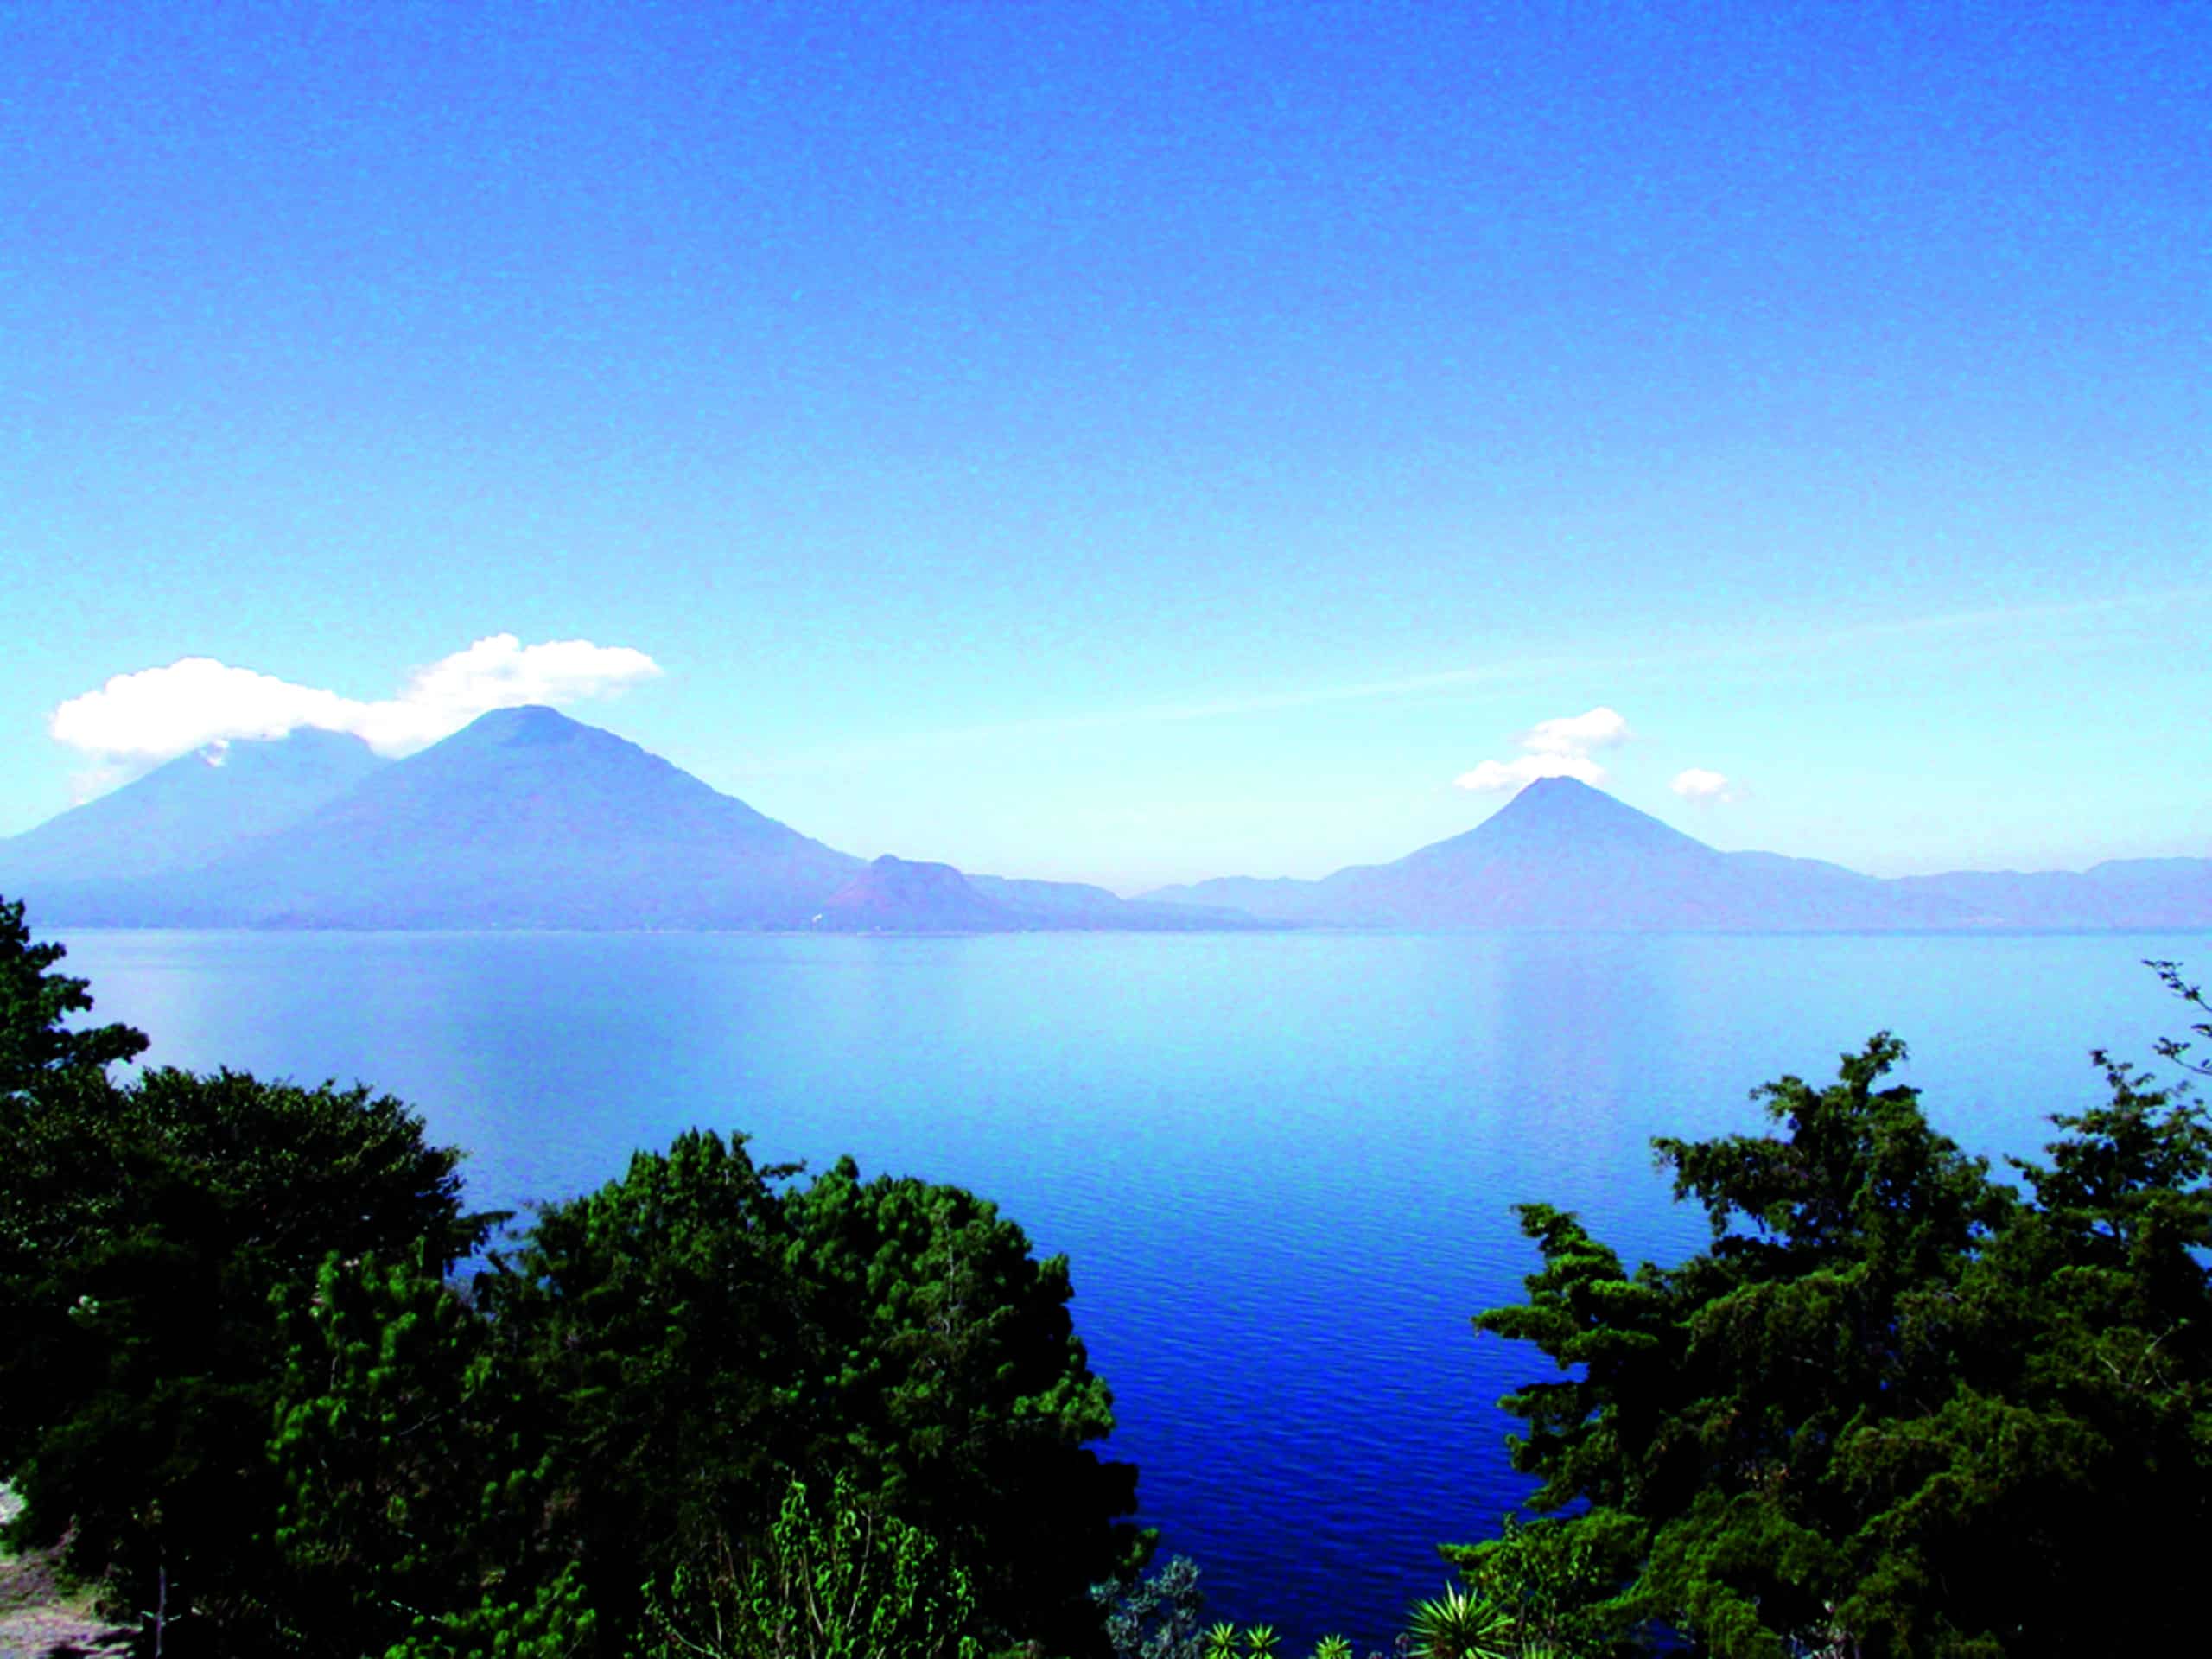 Guatemala Lake from Atitlán